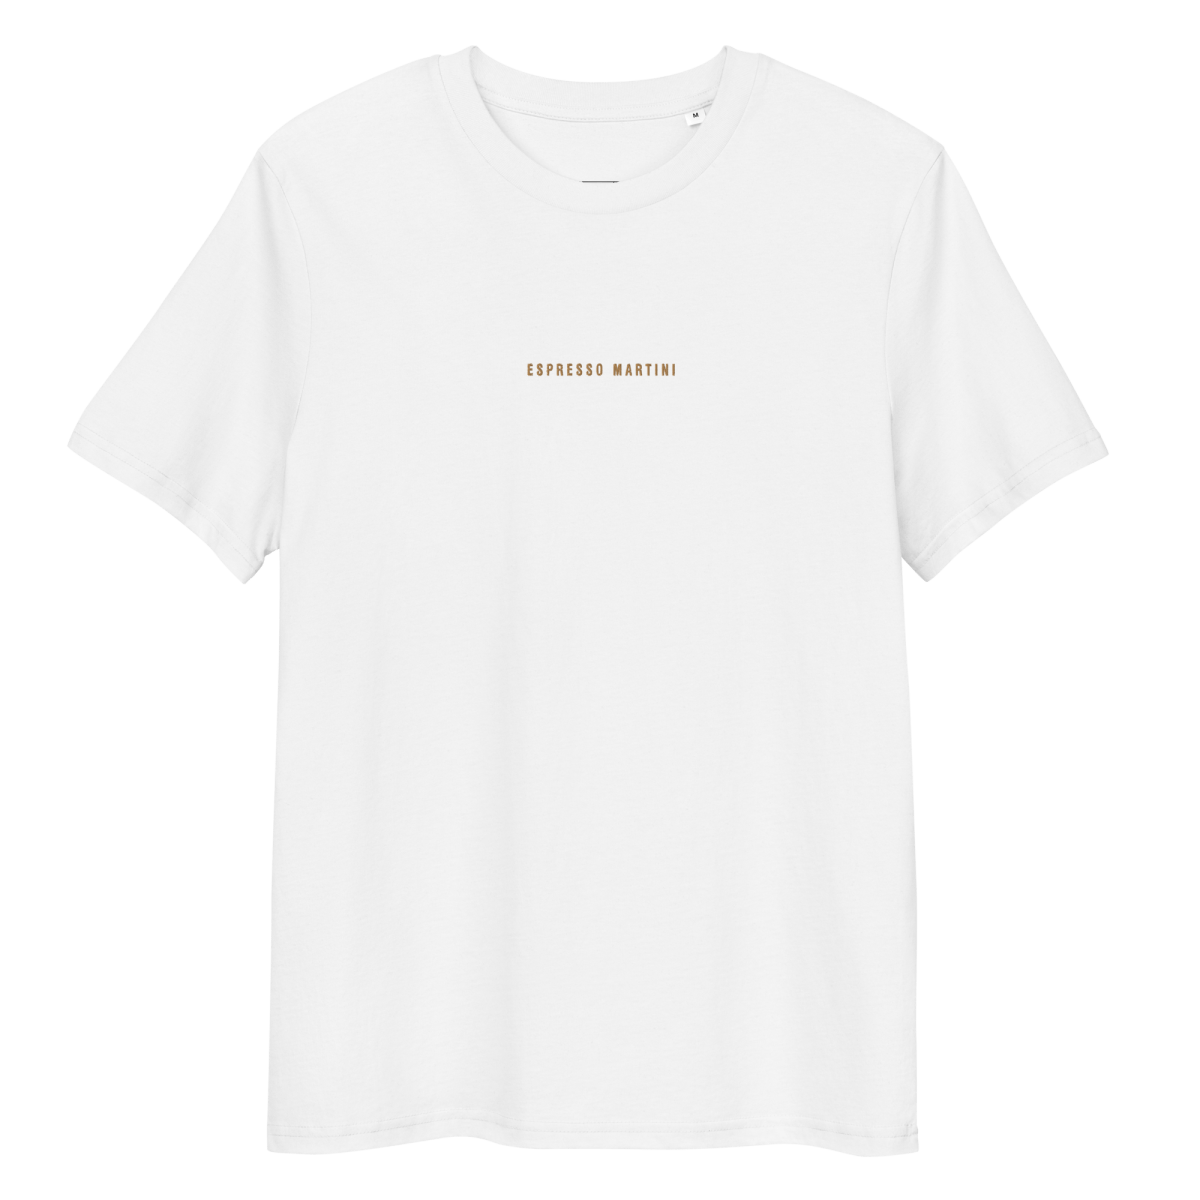 Das Espresso Martini Bio T-Shirt